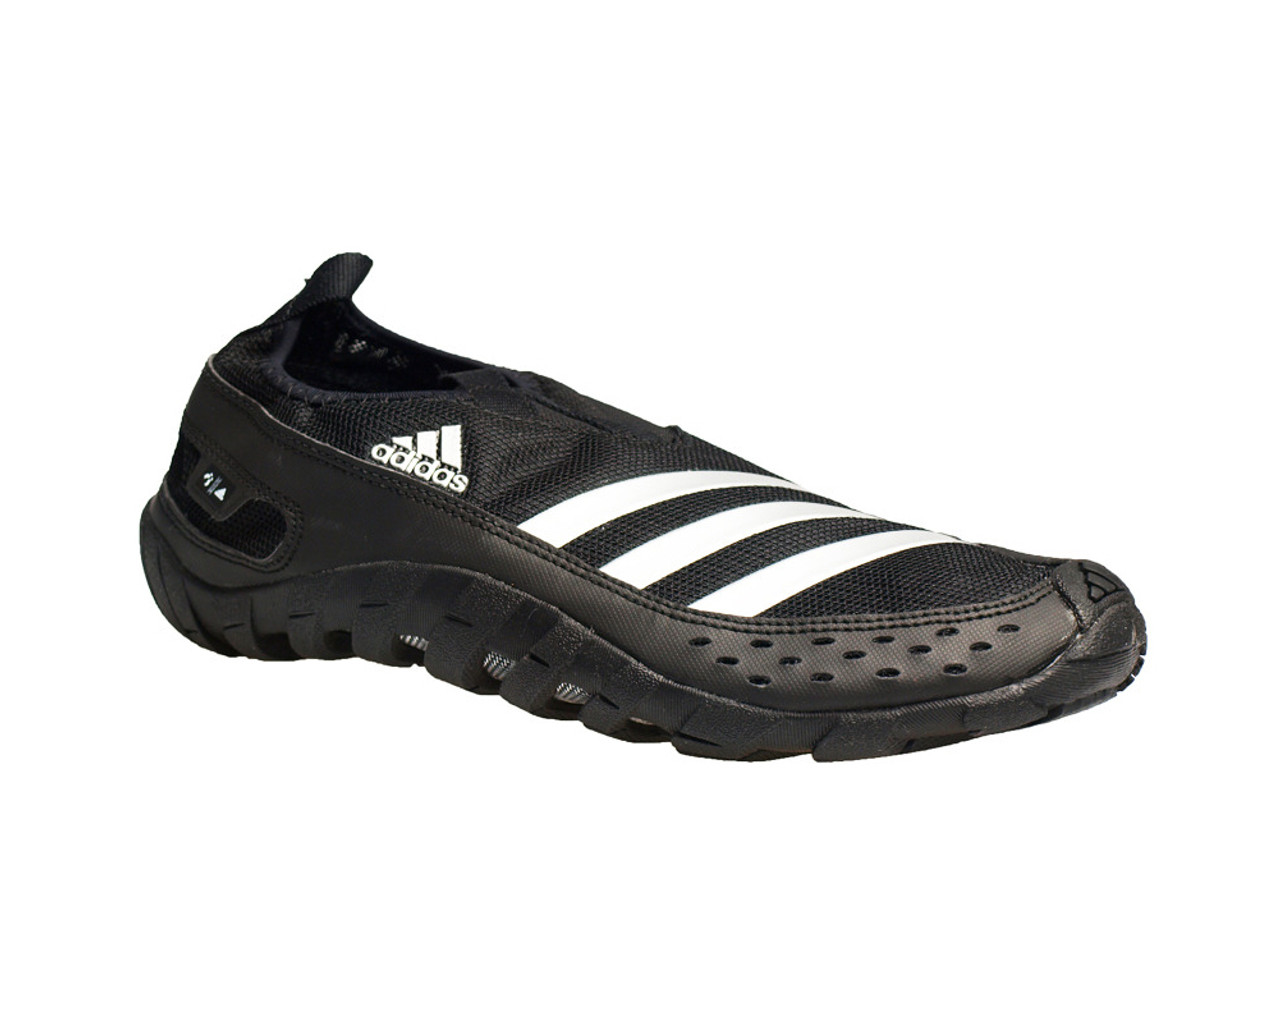 capacidad para justificar Preferencia Adidas Men's Jawpaw II Water Shoes - Black | Discount Adidas Men's Athletic  Shoes & More - Shoolu.com | Shoolu.com